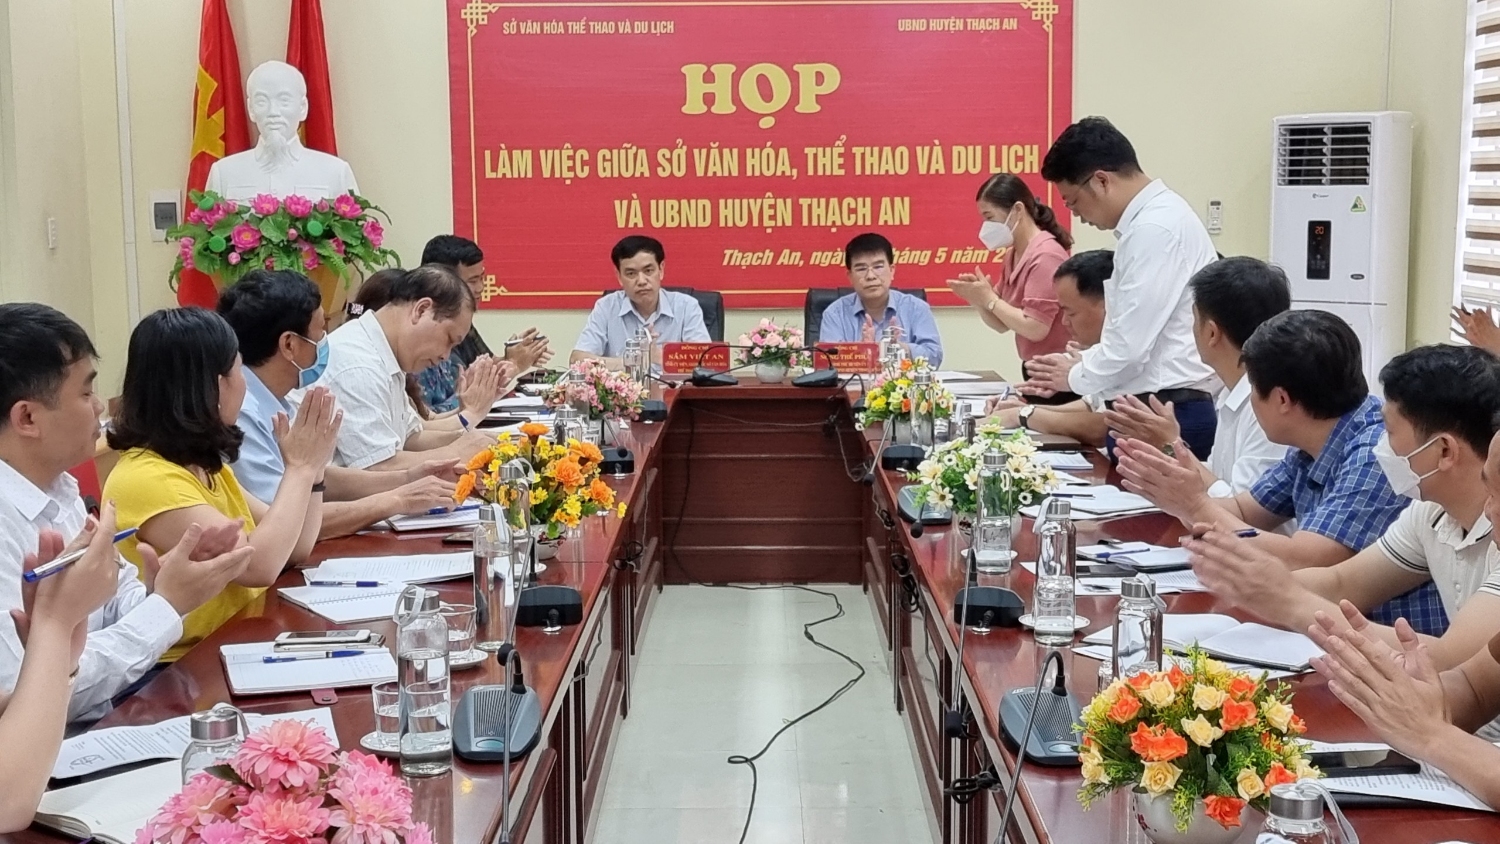 Toàn cảnh buổi làm việc giữa Sở VHTTDL với UBND huyện Thạch An